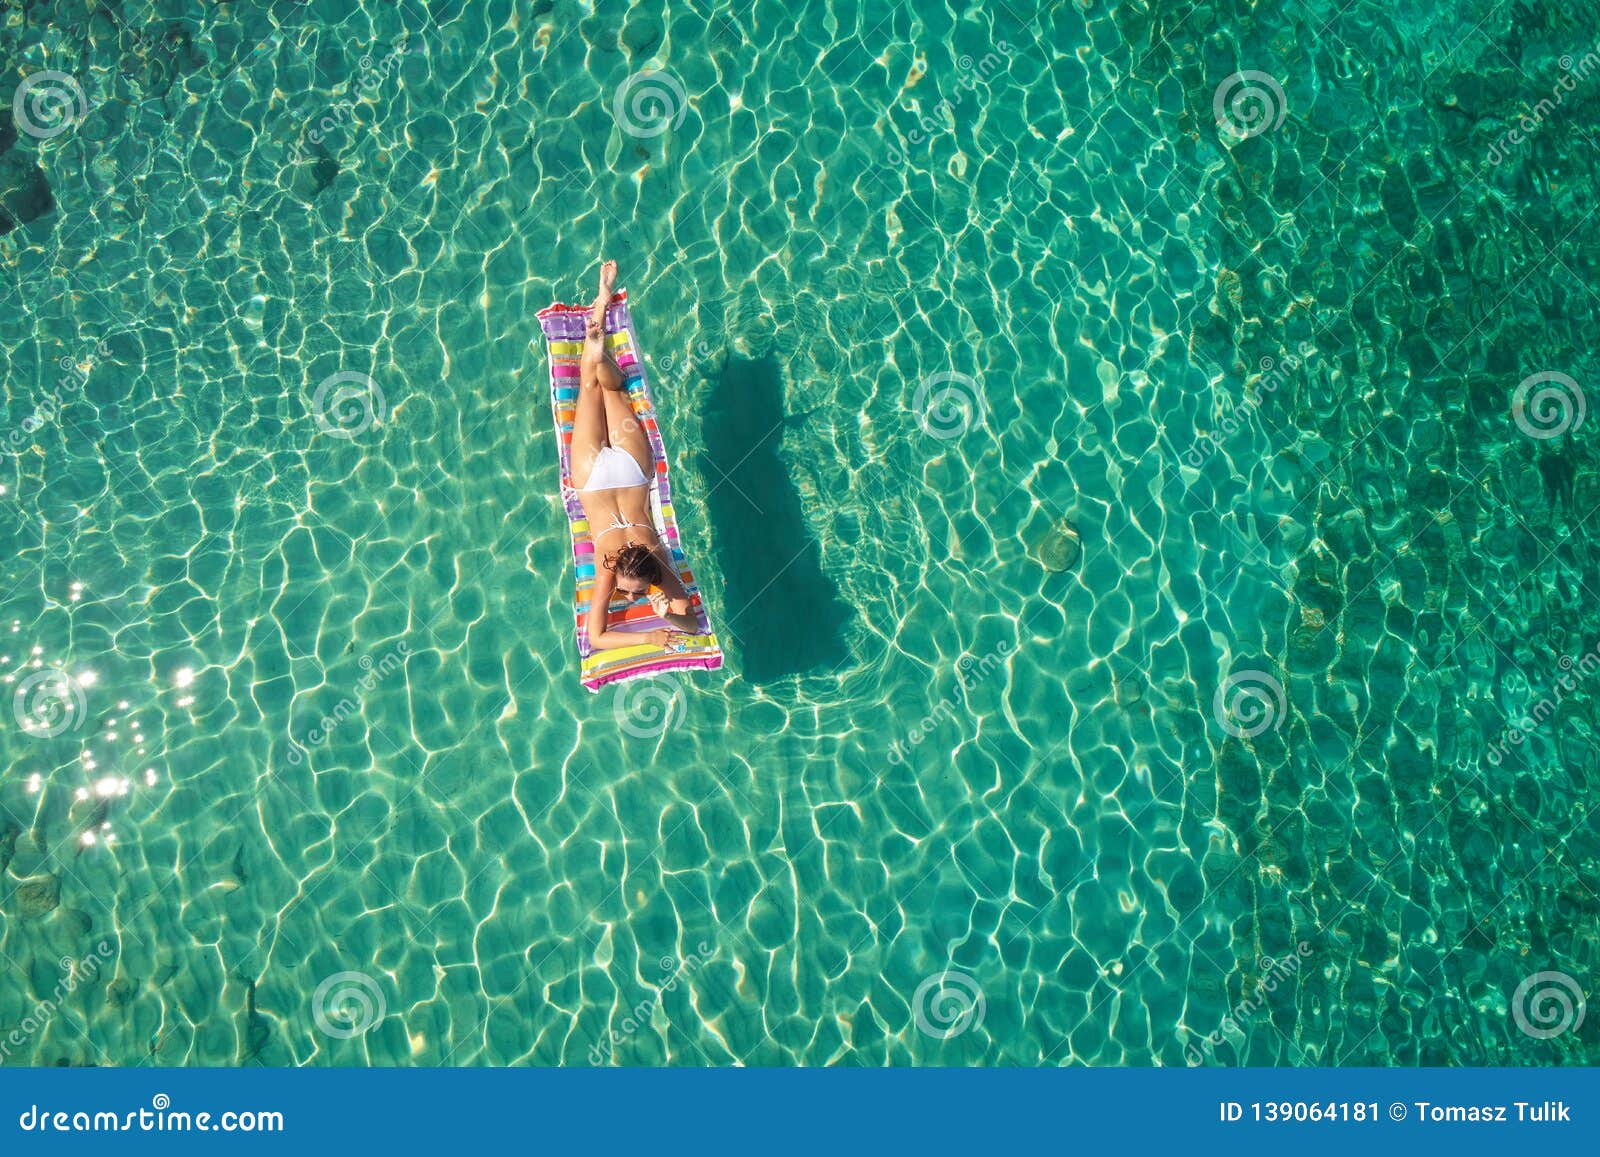 Beautiful Tanned Girl in a Bikini Sitting on a Rocky Beach Stock Image ...